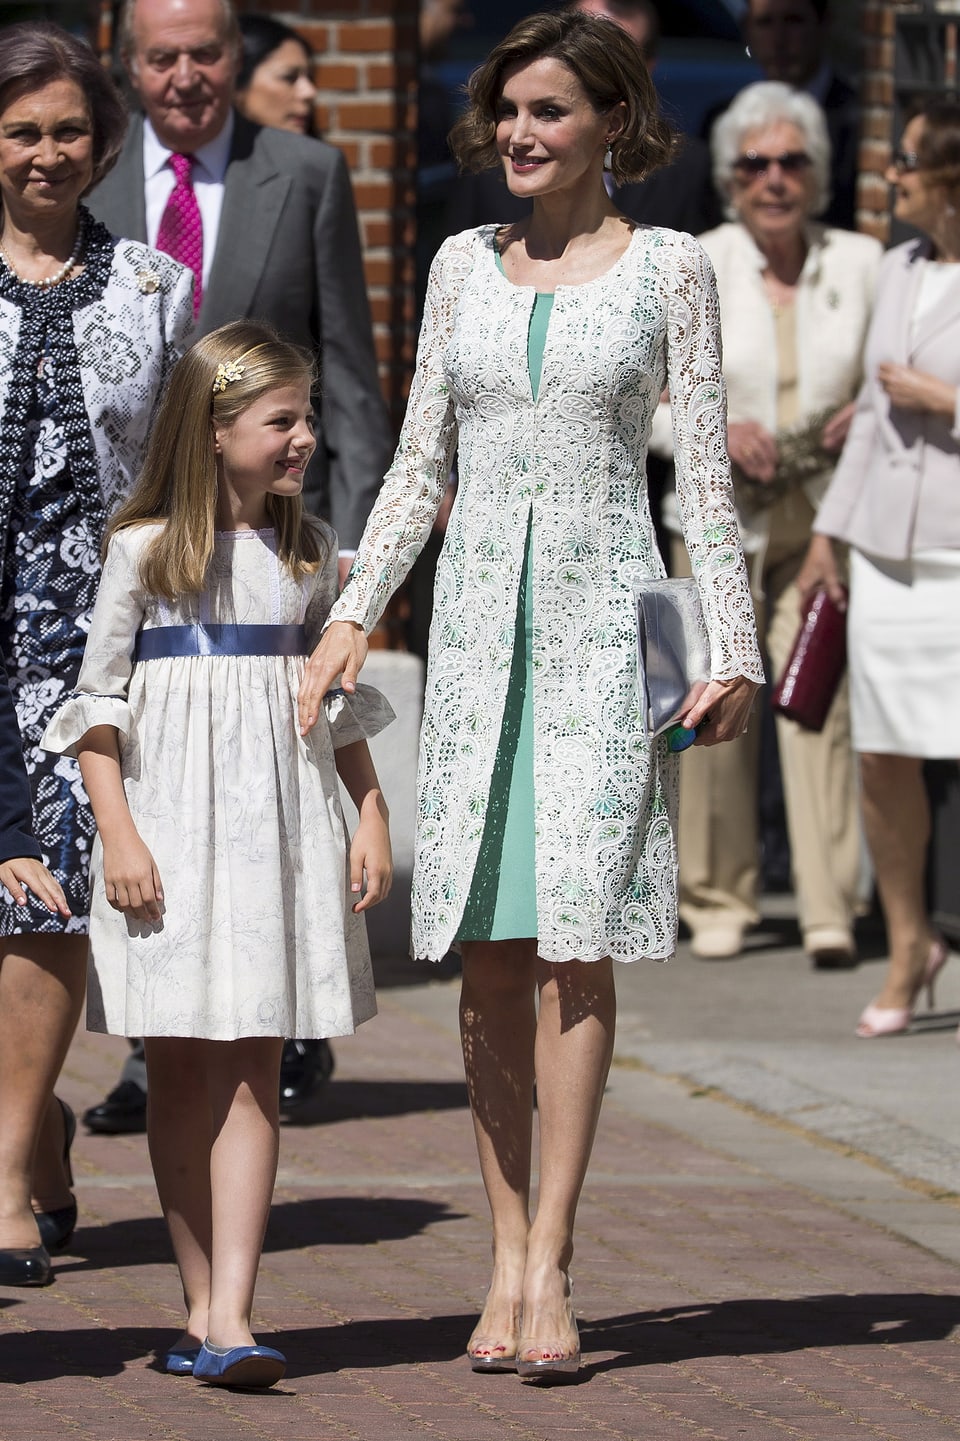 Königin Letizia gilt als grösster royaler Fashionfan. Vom sexy Business-Look über das Cocktailkleid am Abend bis hin zu lässiger Freizeit-Kleidung. Hier mit Tochter Sofia.